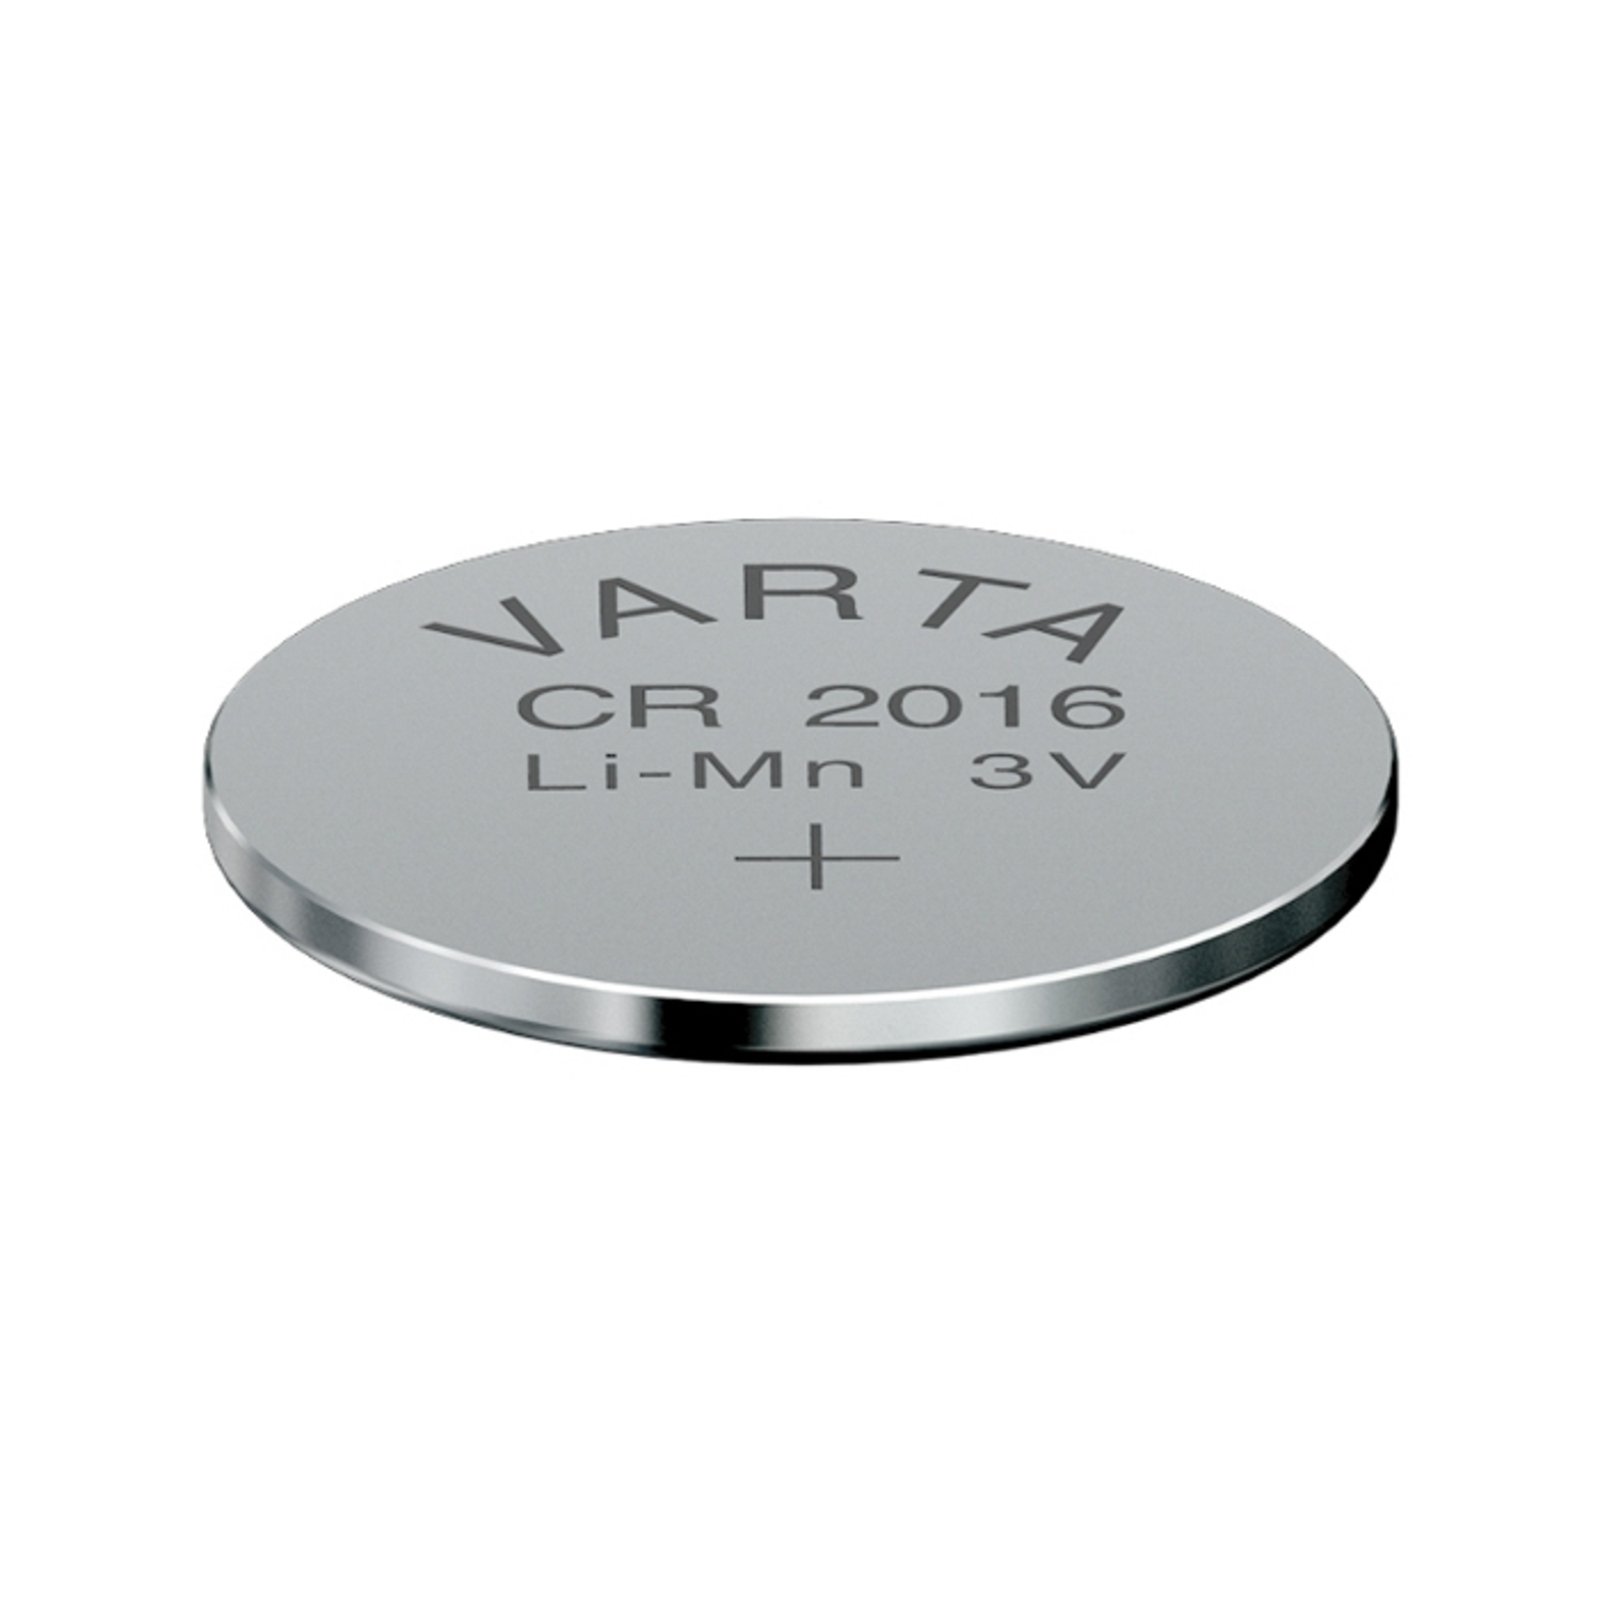 Lithium CR2016 3V knapbatteri fra VARTA